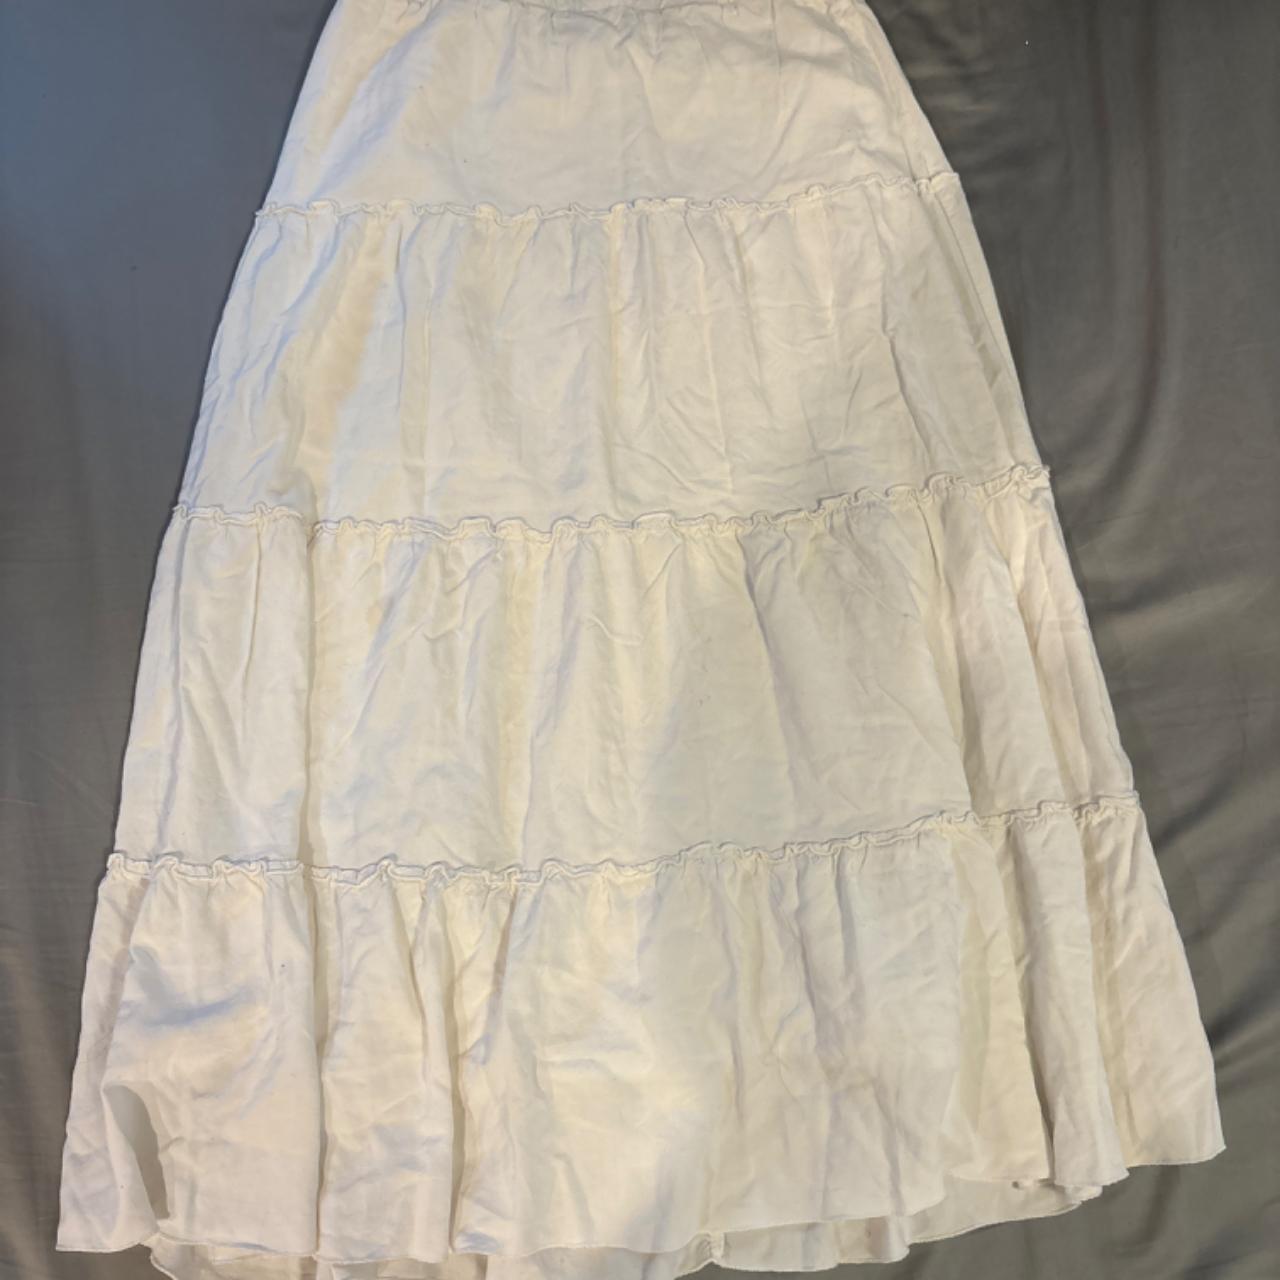 Brandy Melville Women's Cream and White Skirt